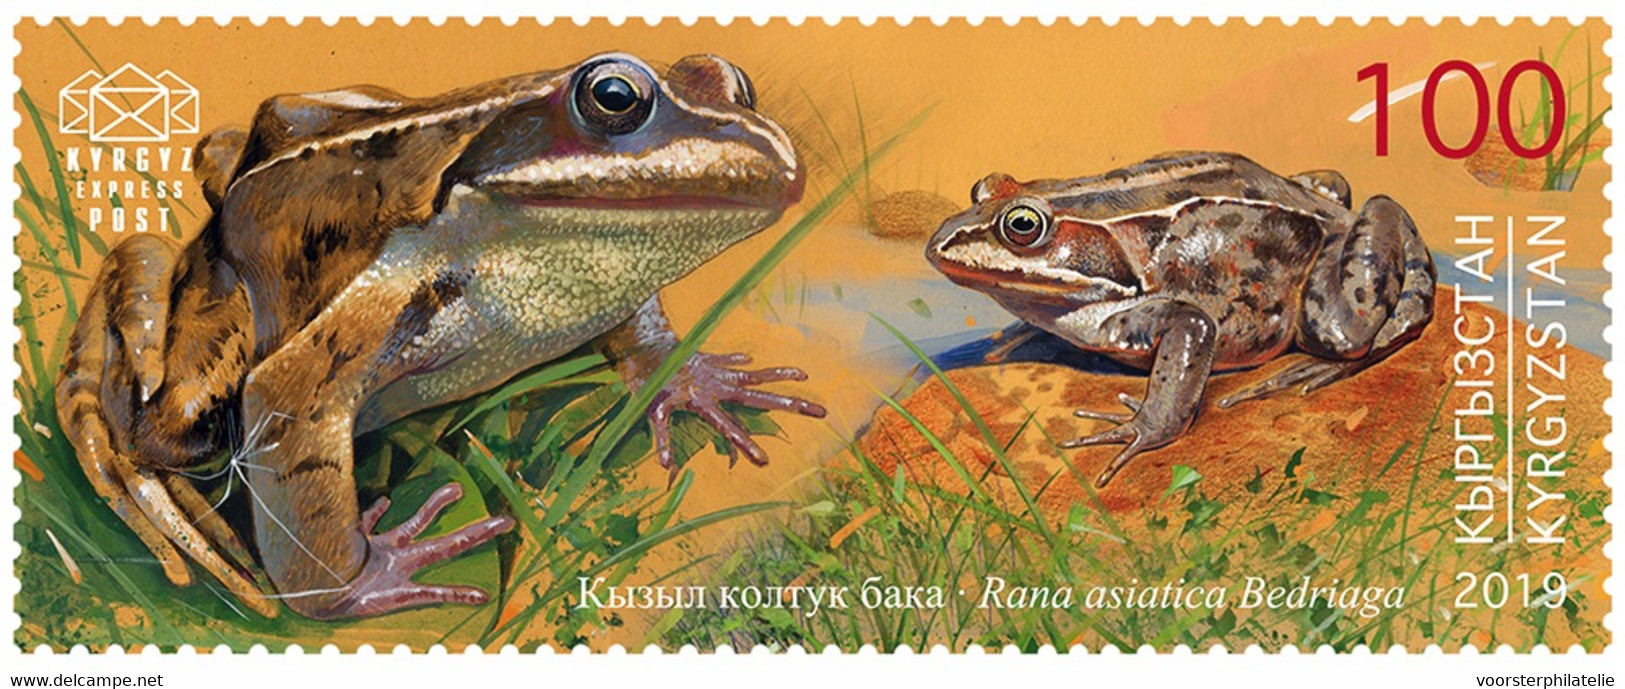 M3-52 ++ KYRGYZSTAN KIRGISTAN 2019 Reptiles And Amphibians MNH NEUF ** - Kirgizië